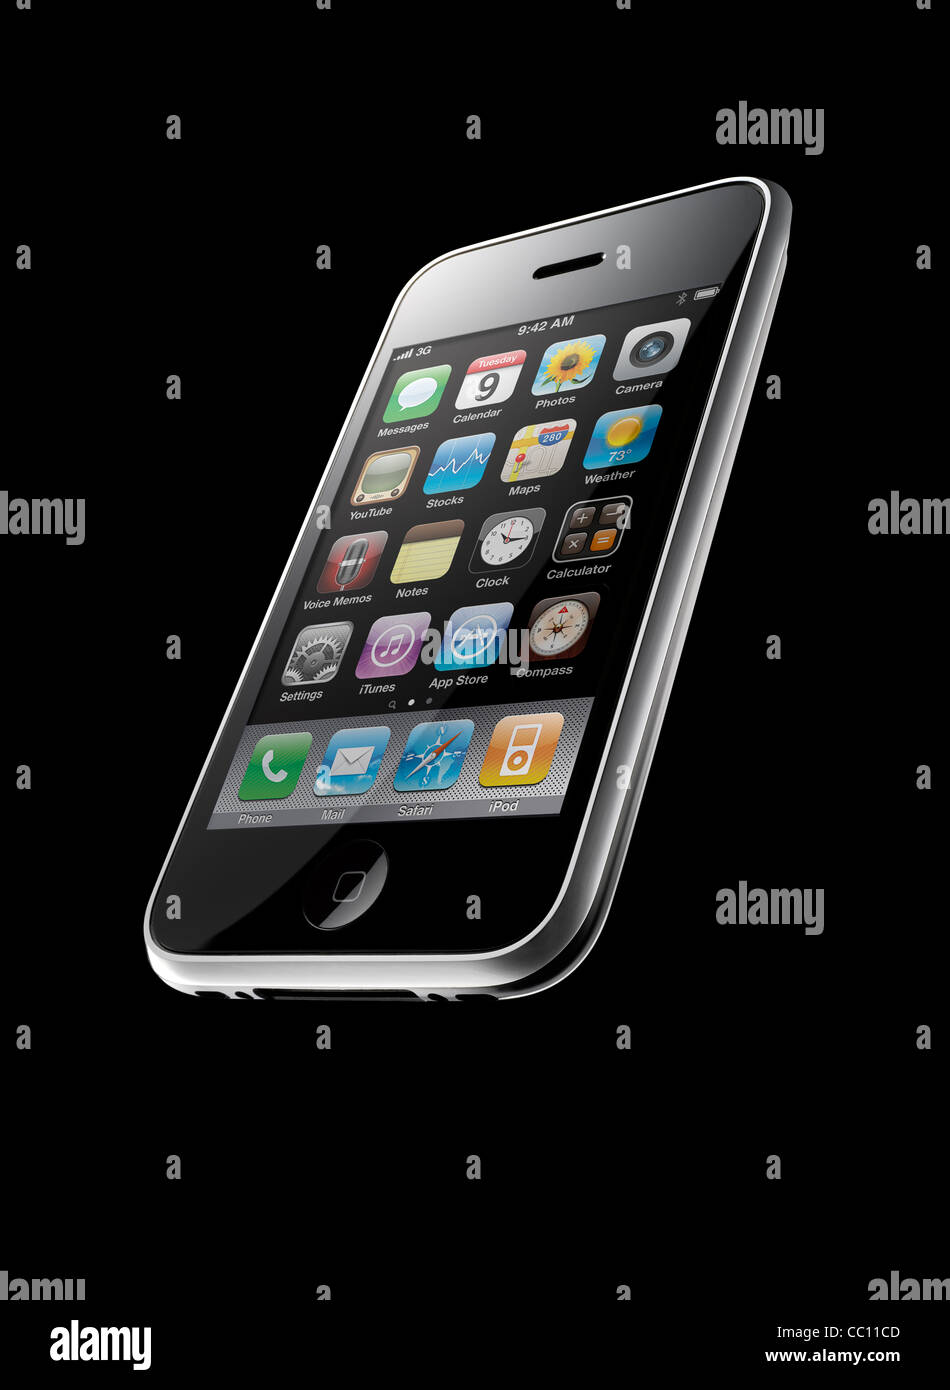 Un iPhone 3GS shot presso un interessante angolo, su sfondo nero Foto Stock